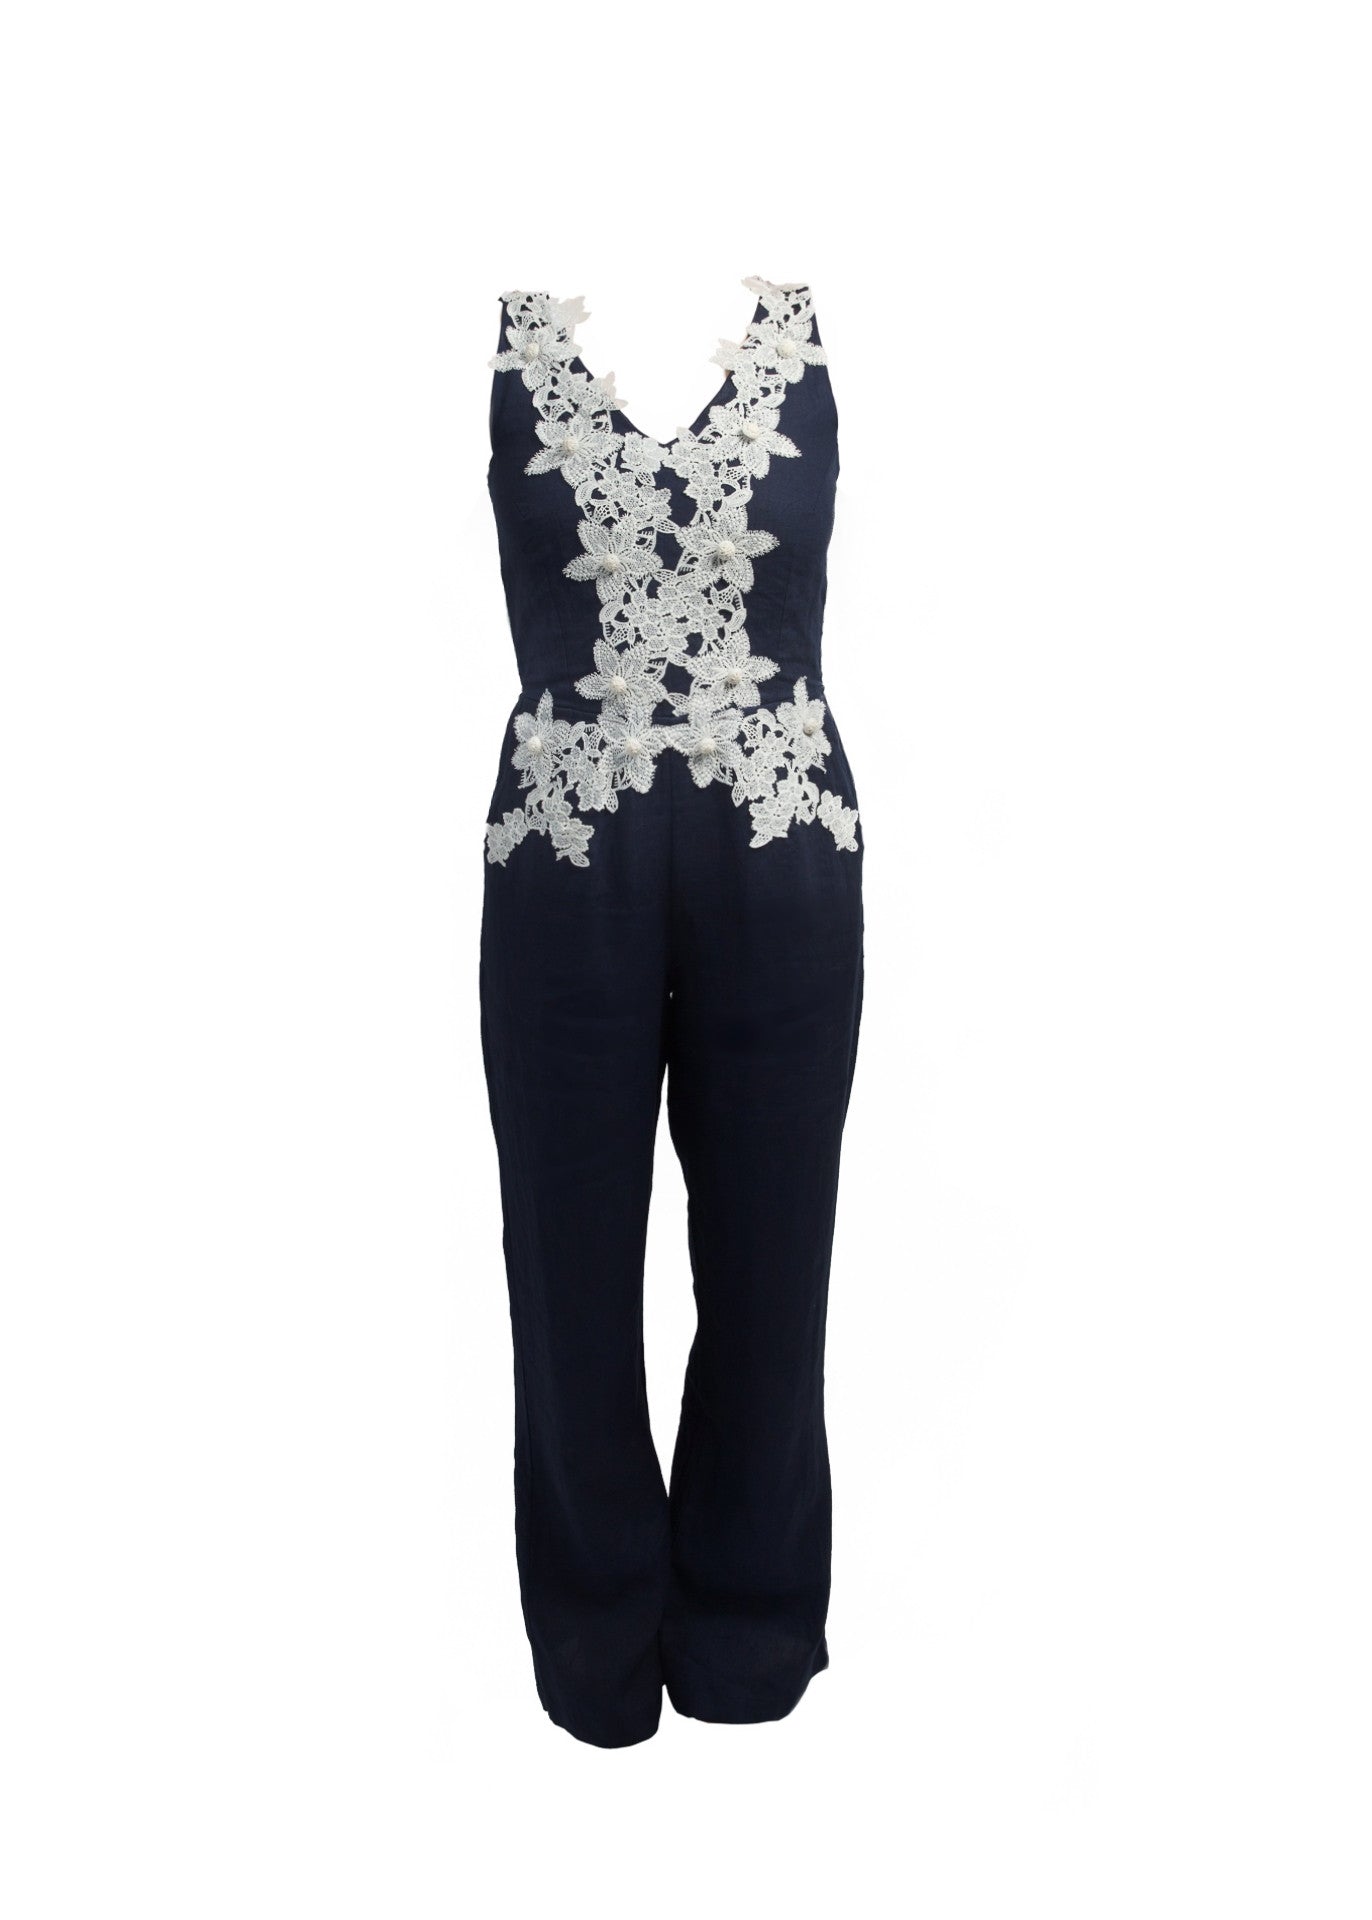 Linen jump suit with floral lace applique